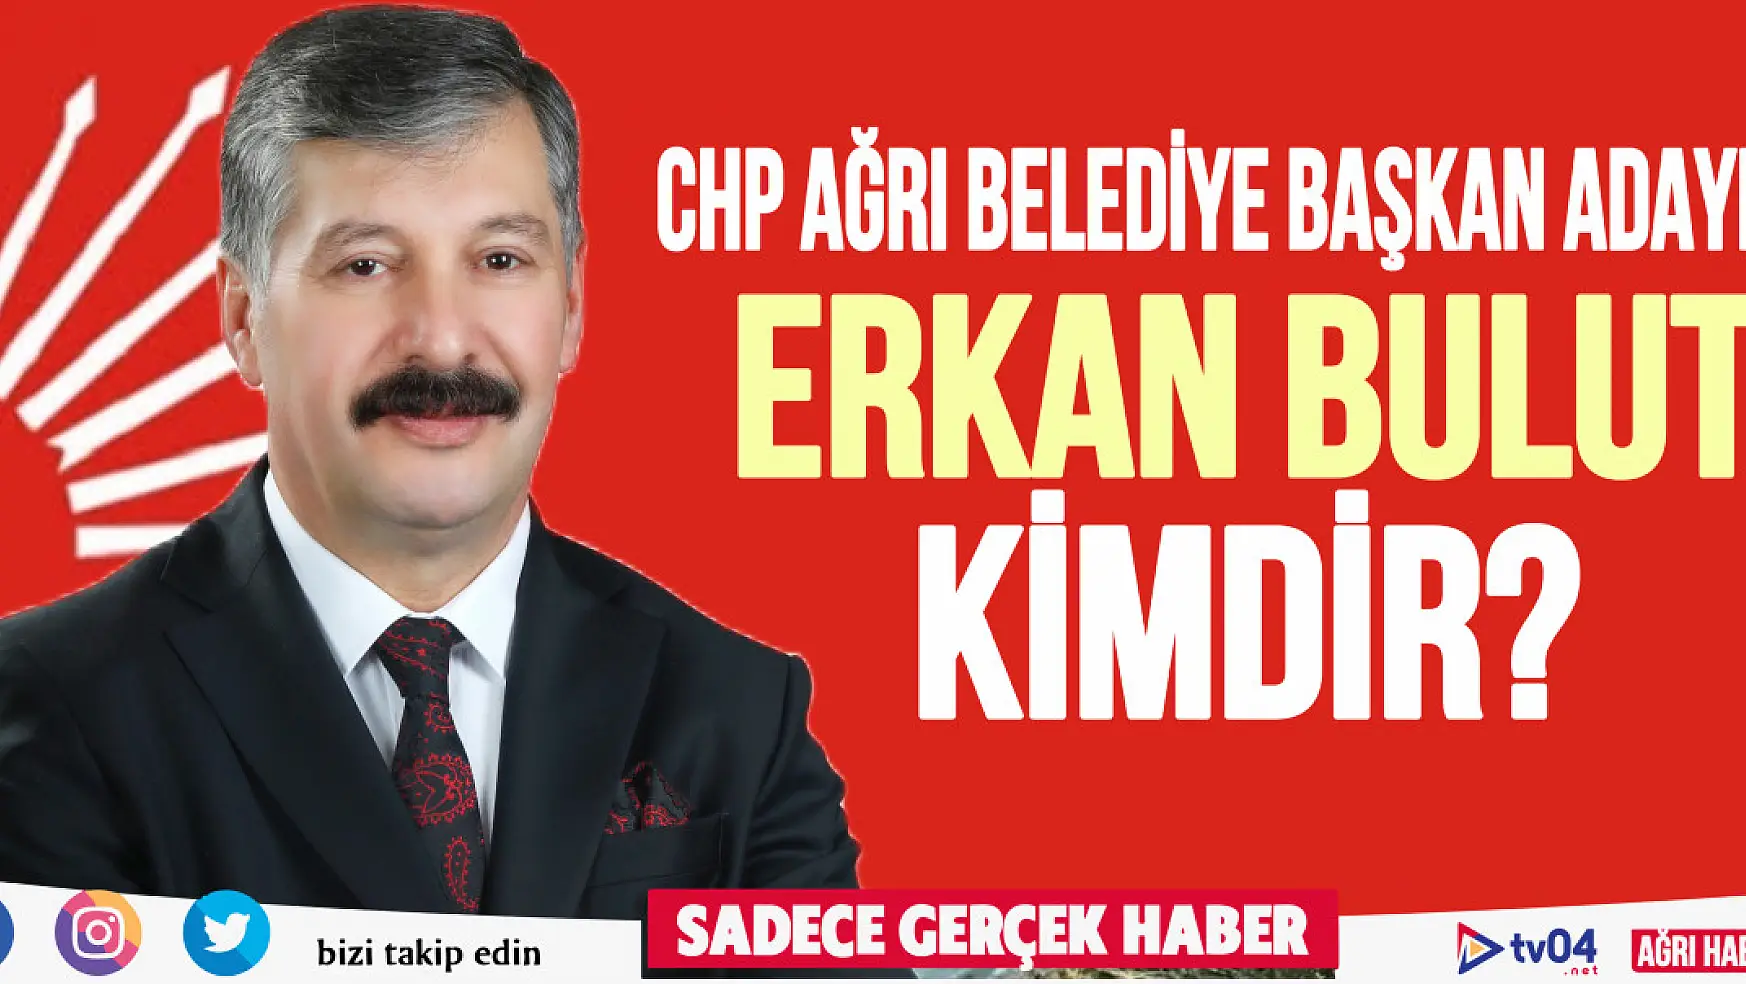 CHP Ağrı Belediye Başkanı Erkan Bulut Kimdir?